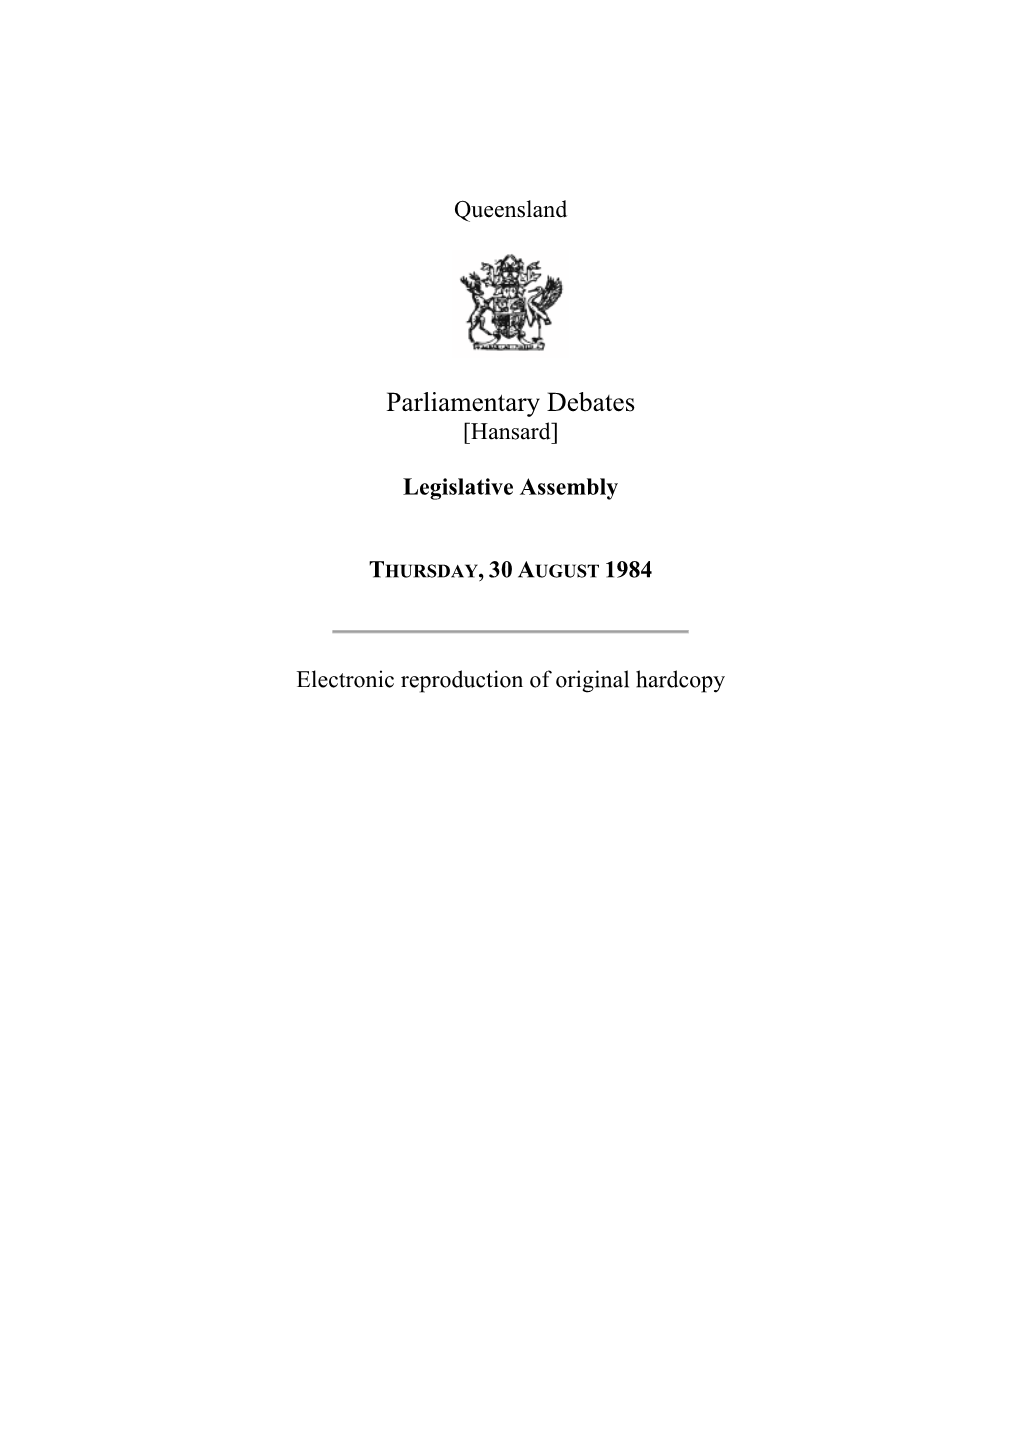 Legislative Assembly Hansard 1984